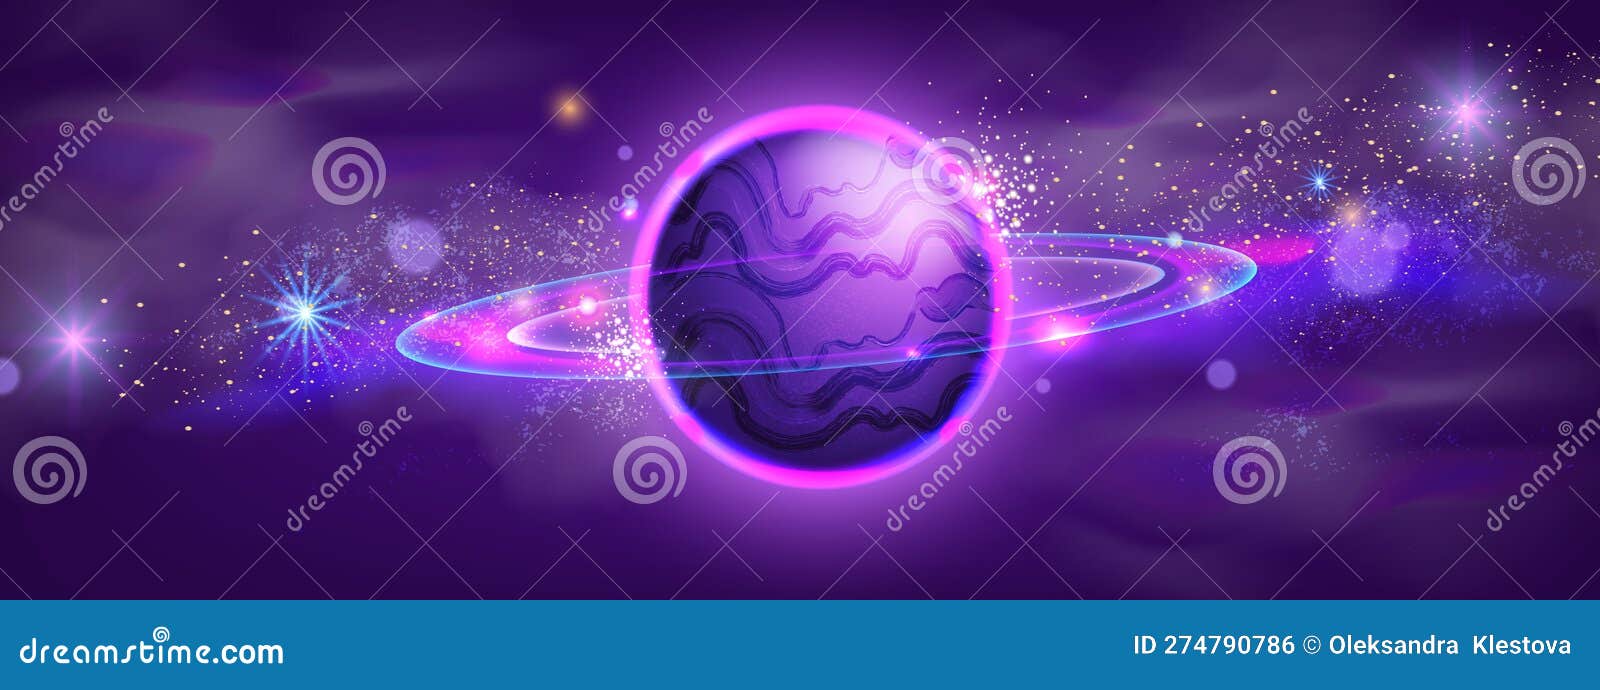 Alienígena Conteúdo grátis , Cartoon Alien, roxo, violeta